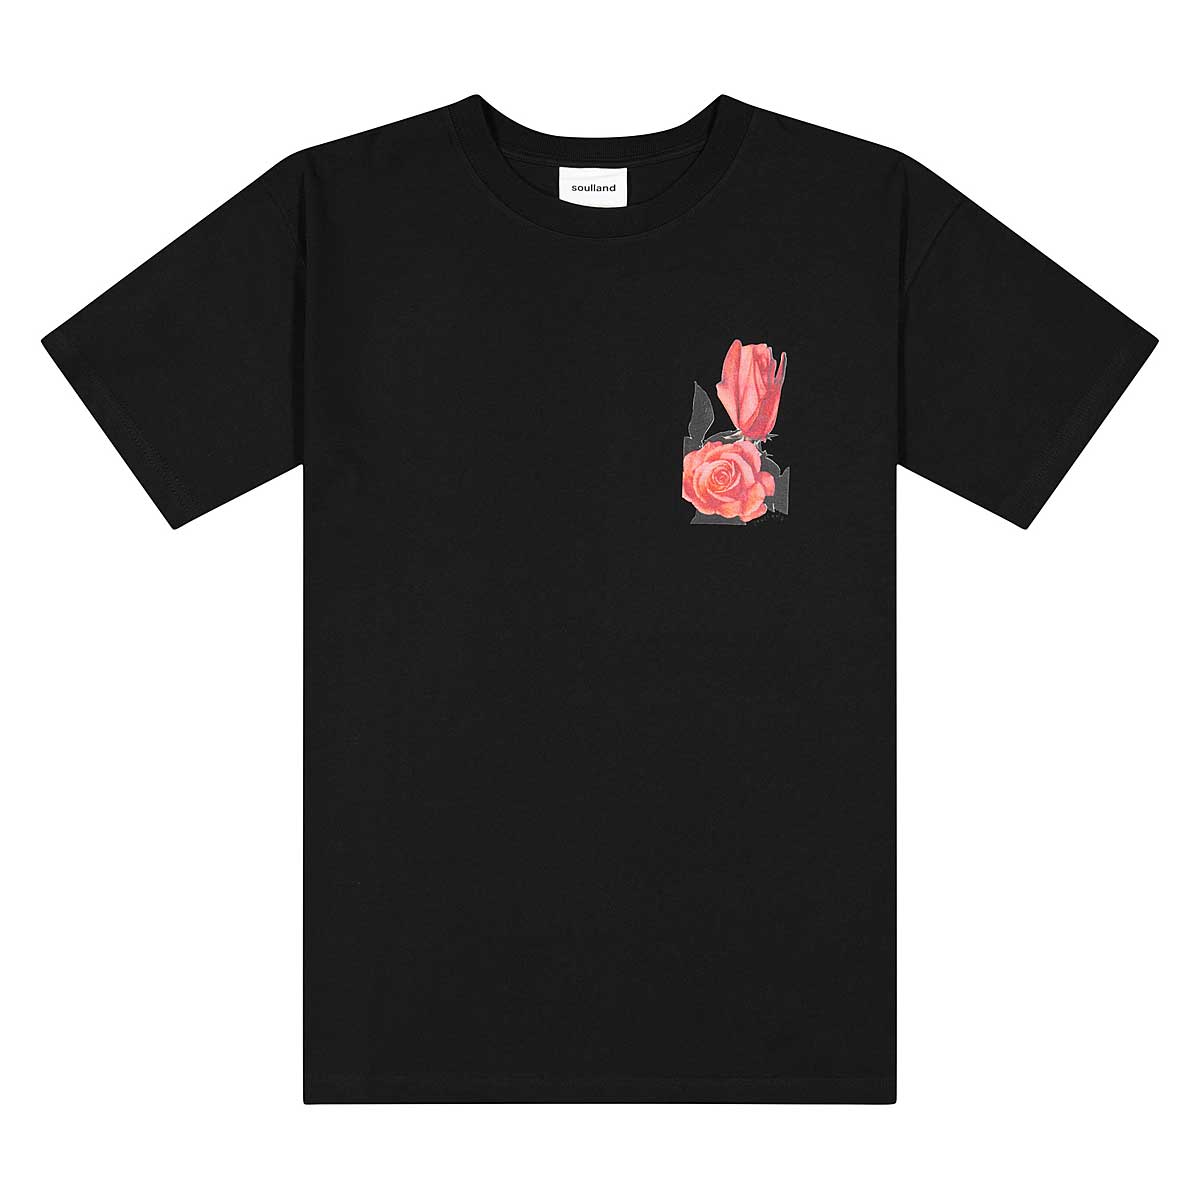 Soulland Rose T-Shirt, Black